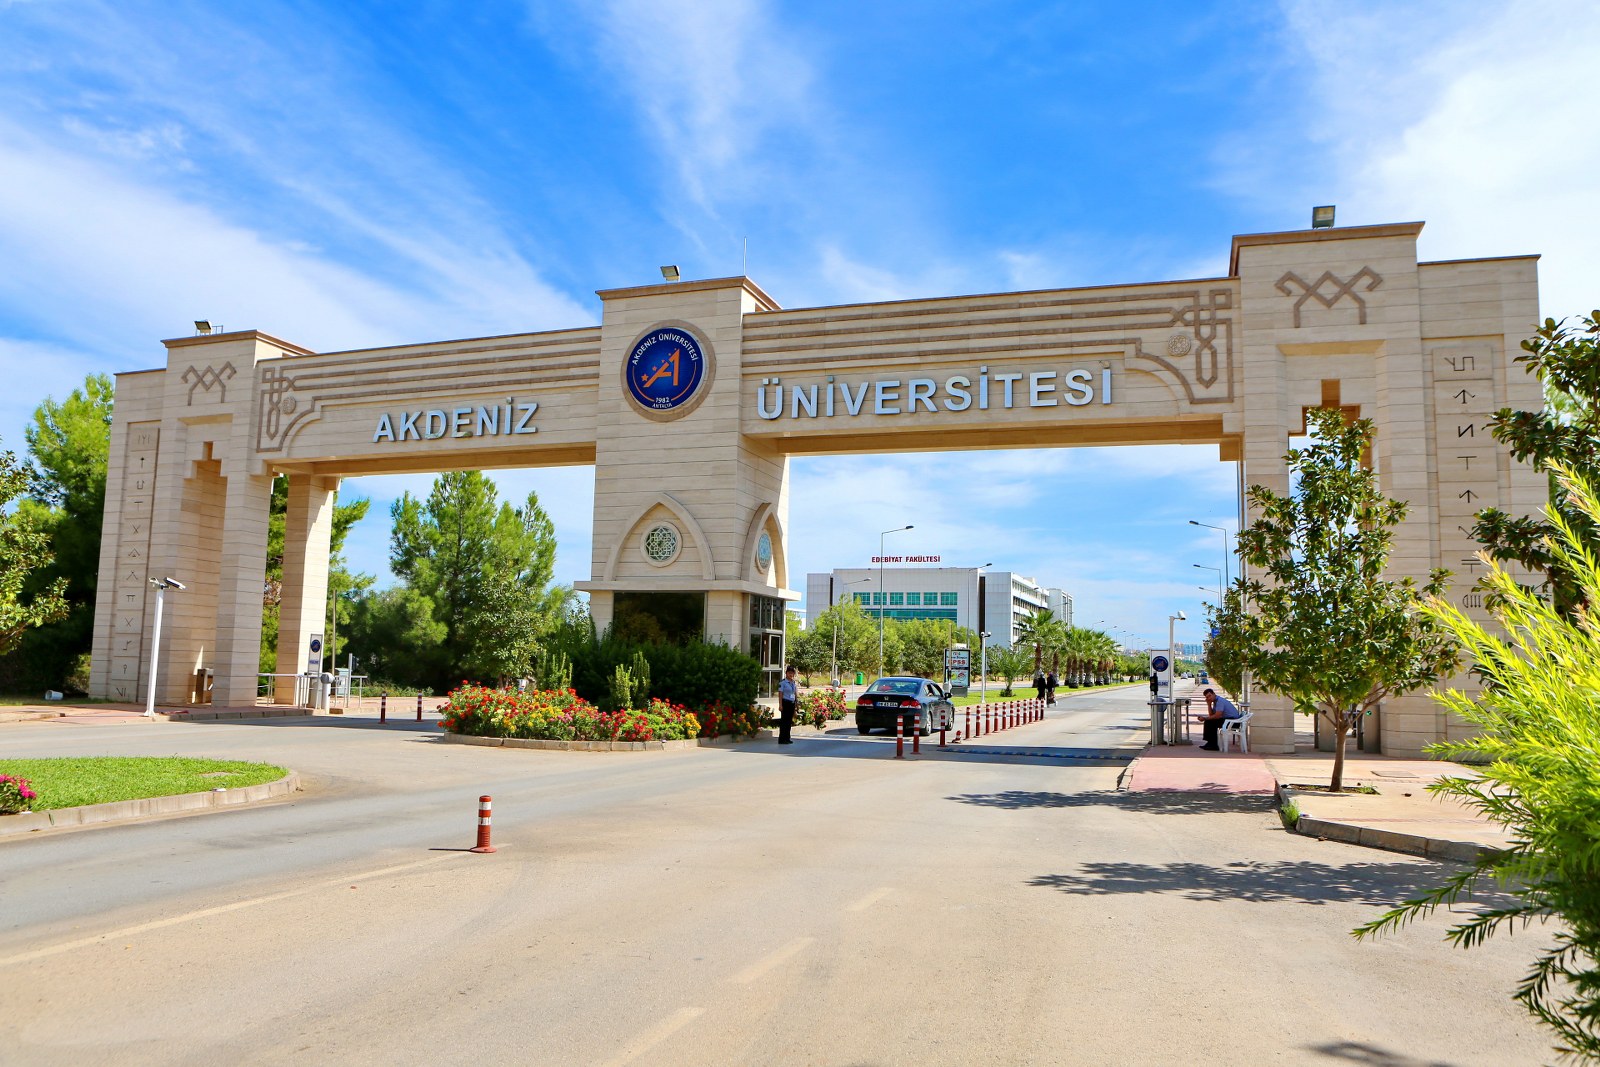 Akdeniz Üniversitesi 183 personel alacak